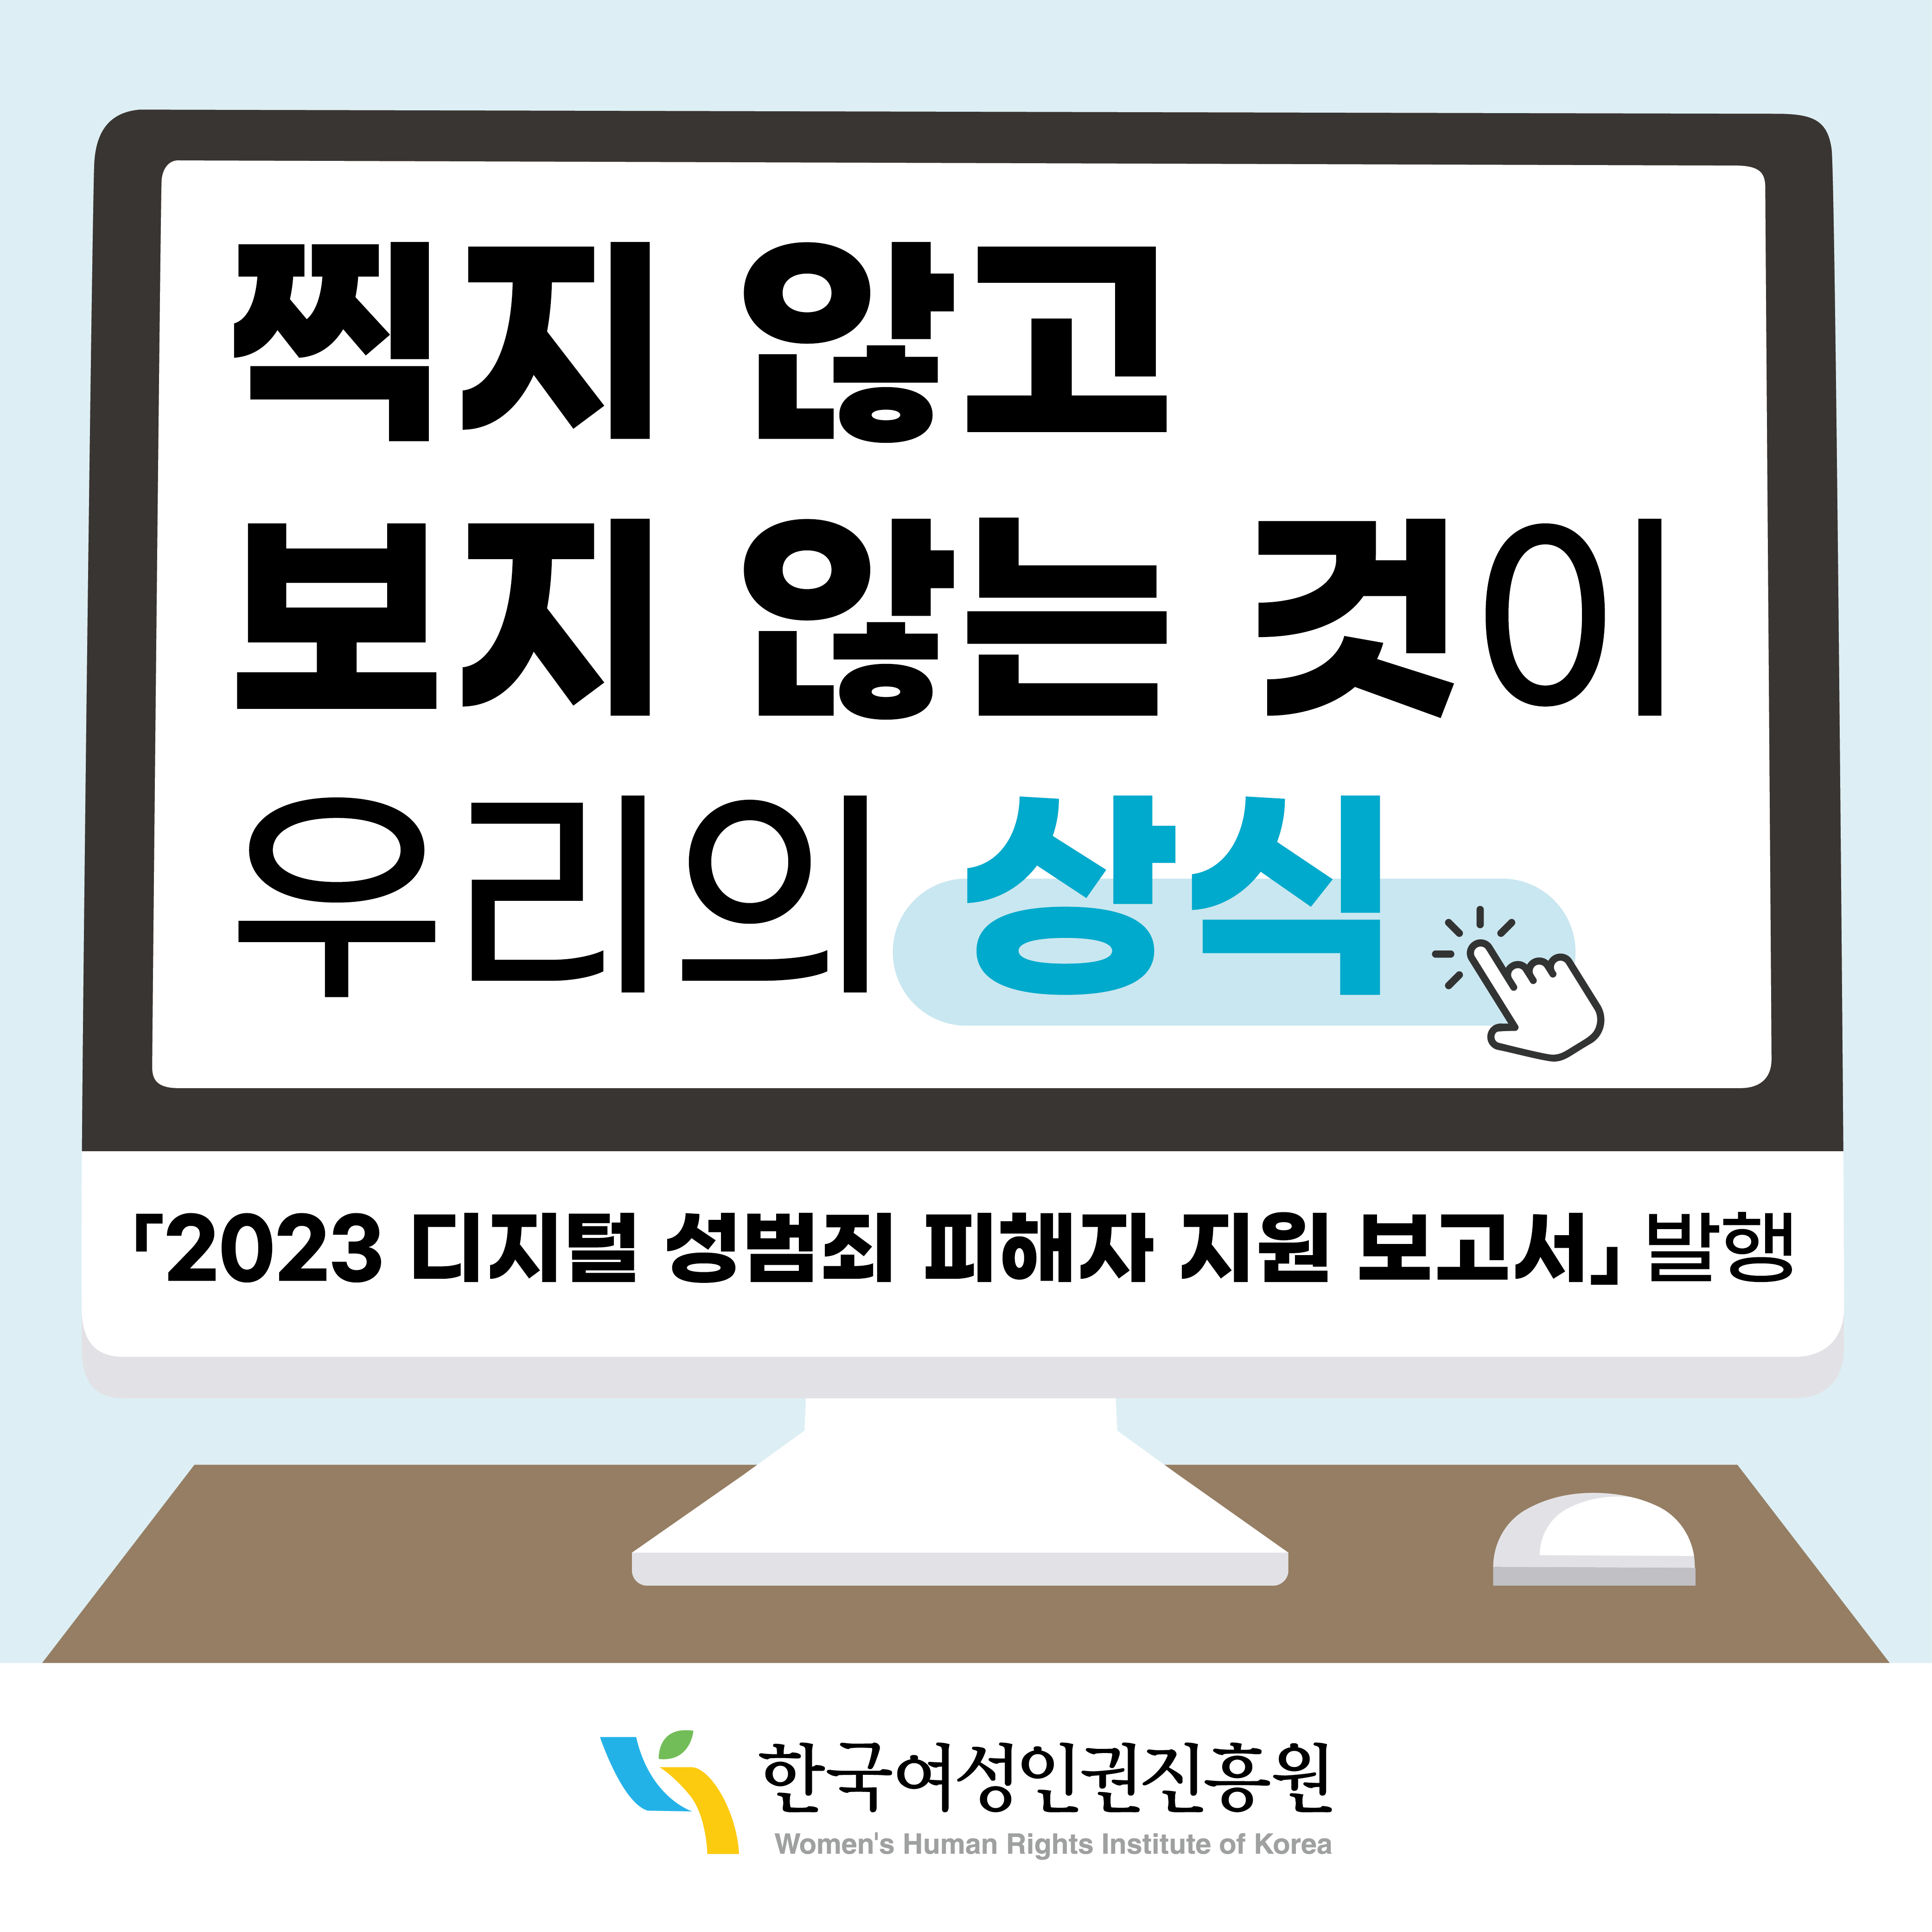 찍지 않고 보지 않는 것이 우리의 상식 2023 디지털 성범죄 피해자 지원 보고서 발행 한국여성인권진흥원 WOMEN'S HUMAN RIGHTS INSTITUTE OF KOREA